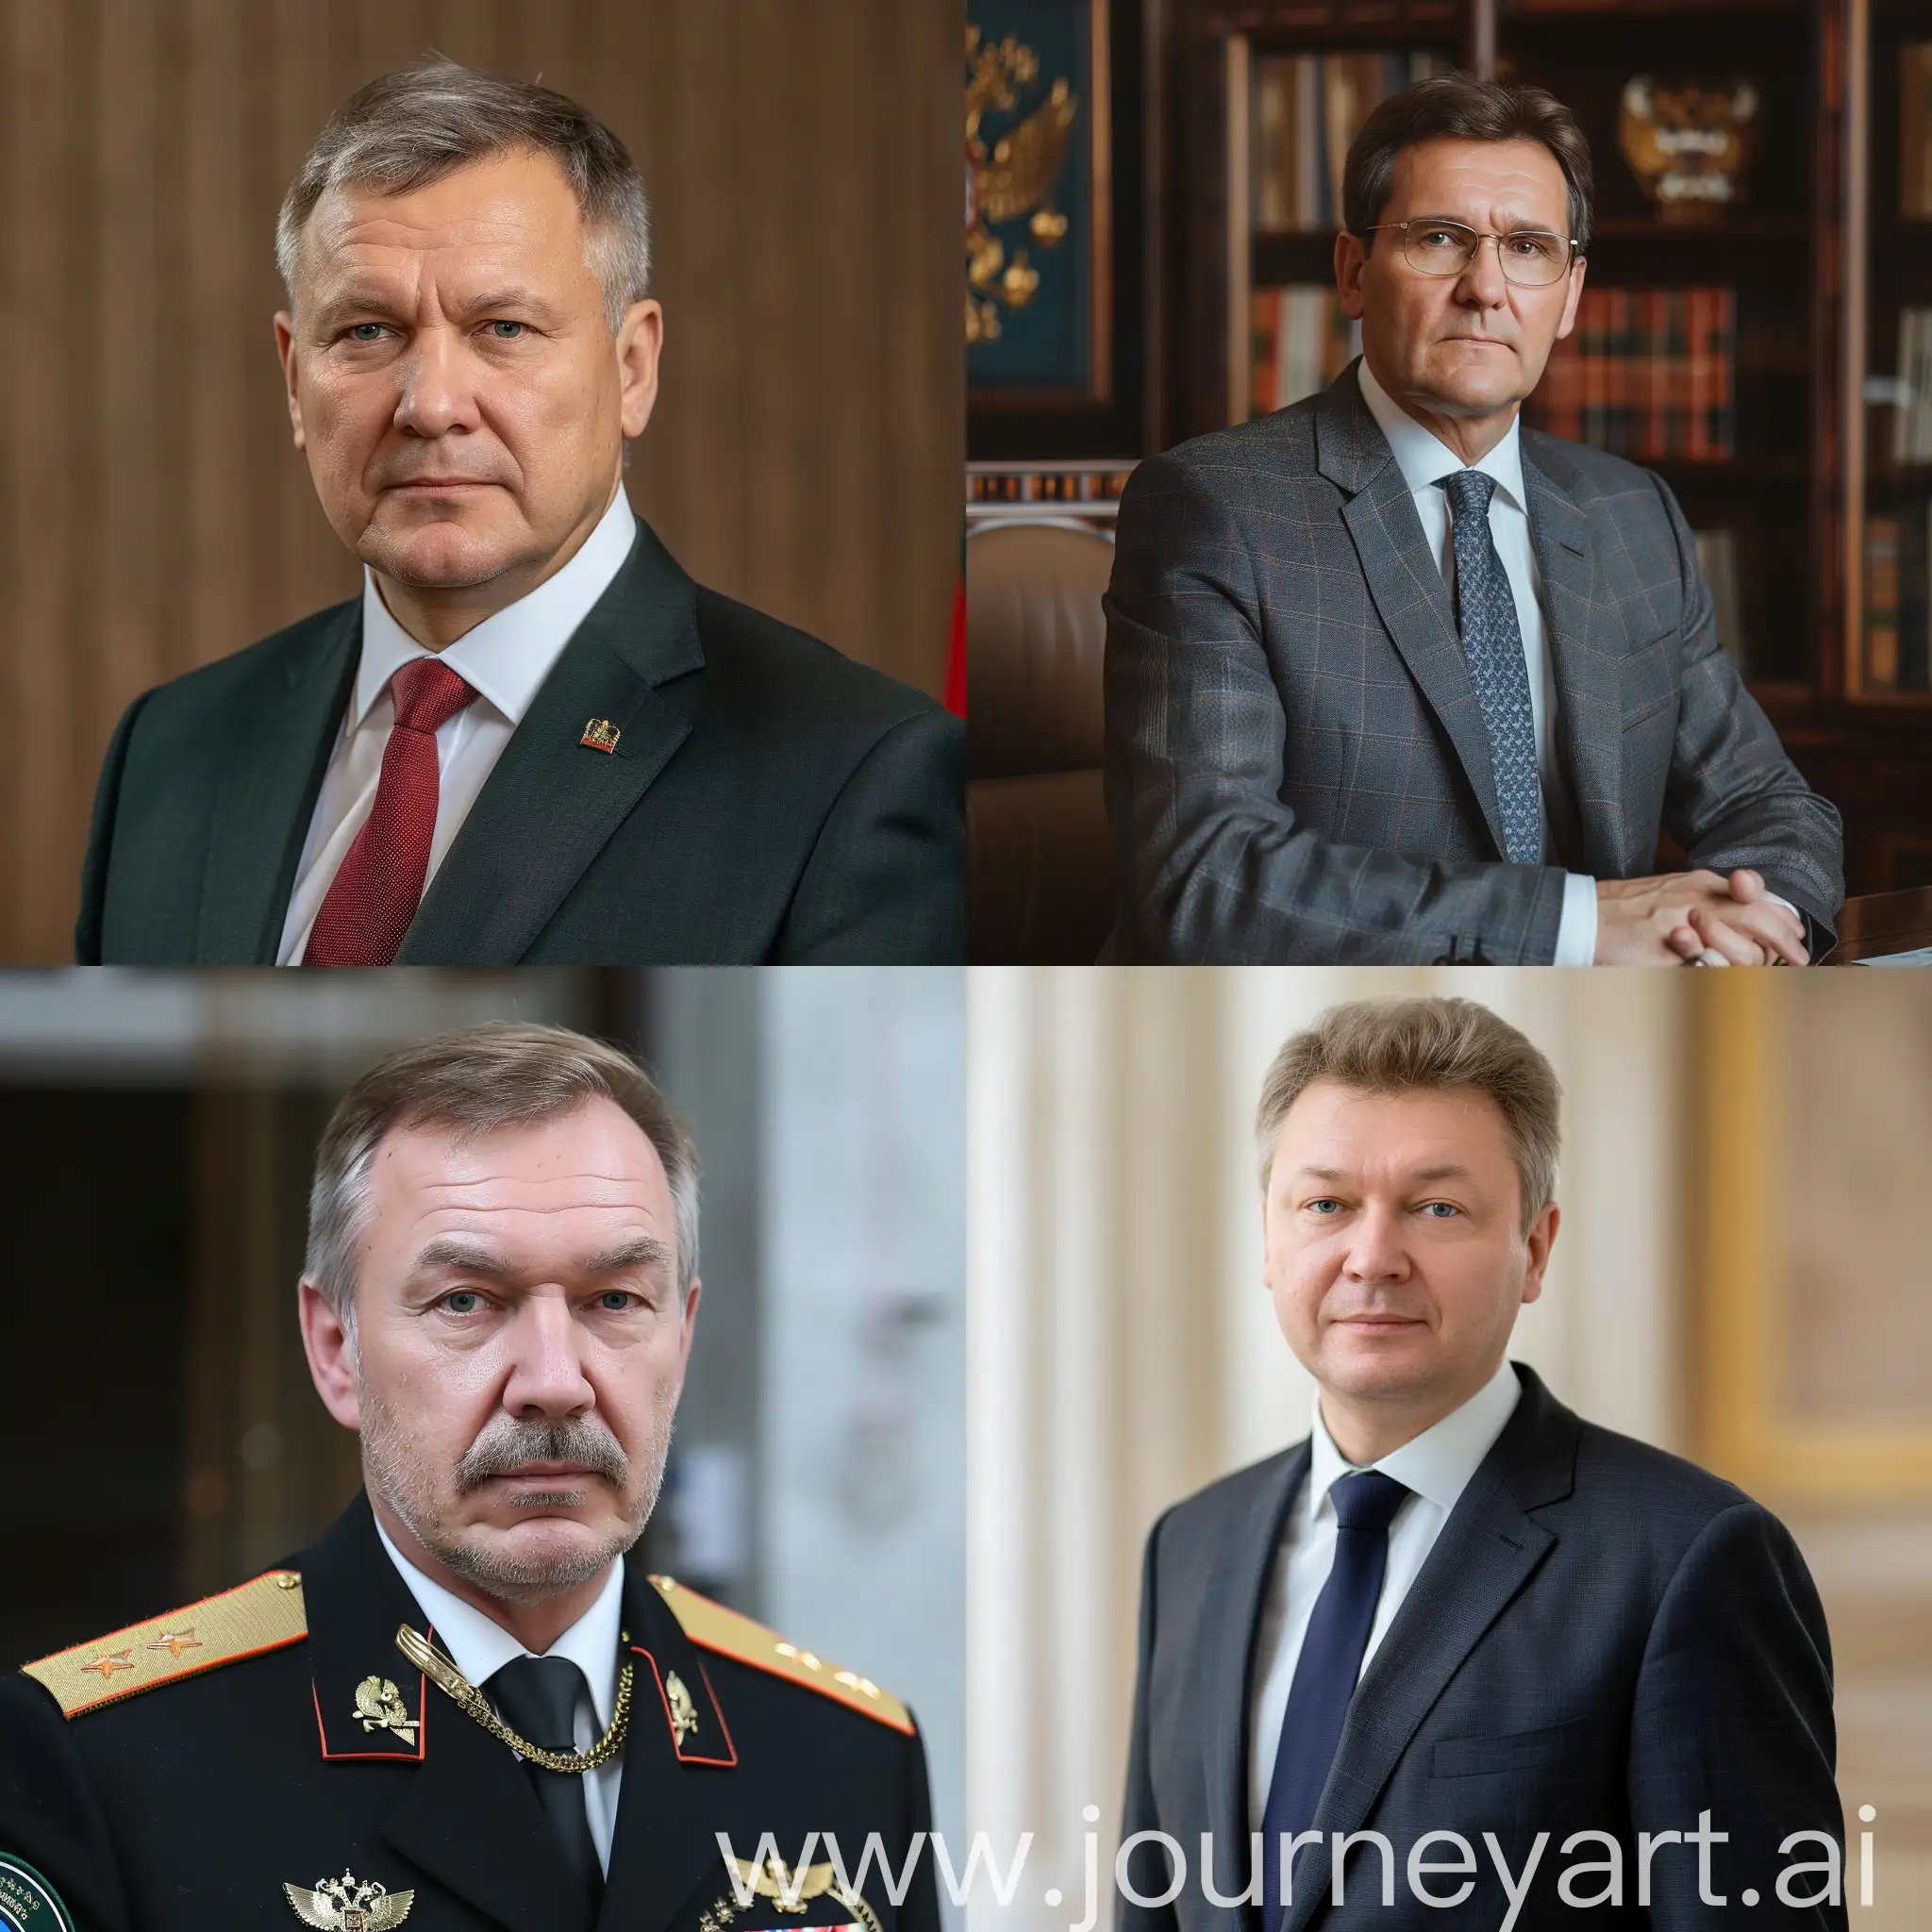 Deputy-President-of-Russia-Portrait-in-Formal-Attire